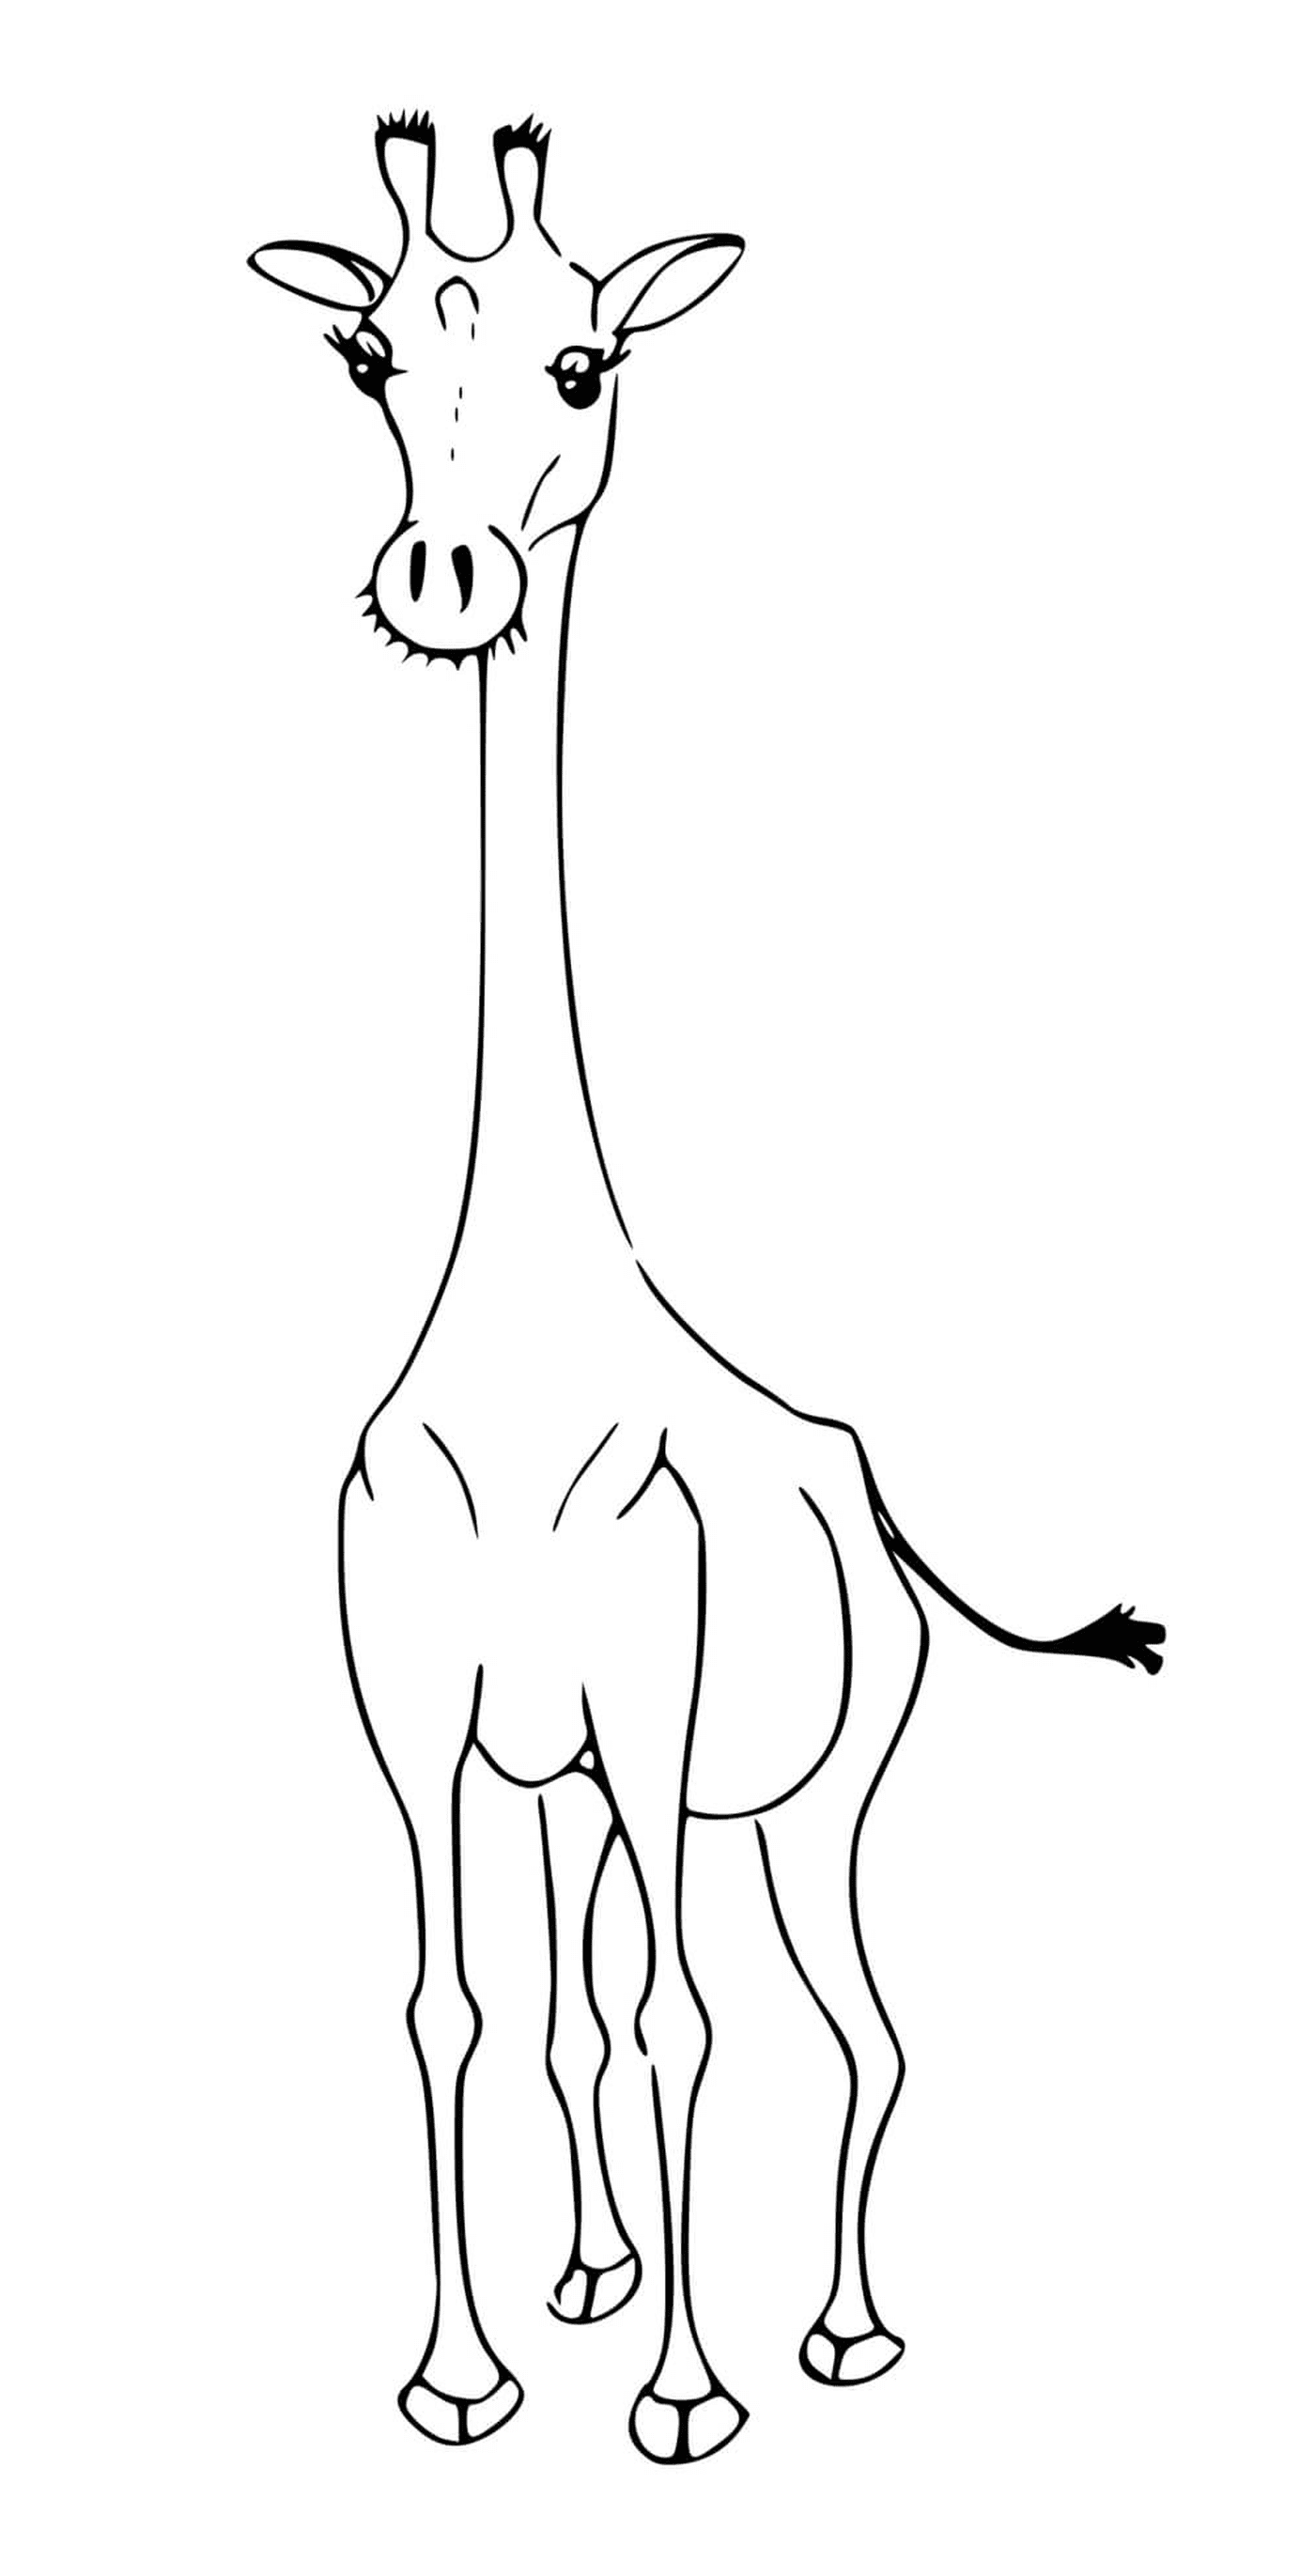  Una jirafa sin sus manchas características 